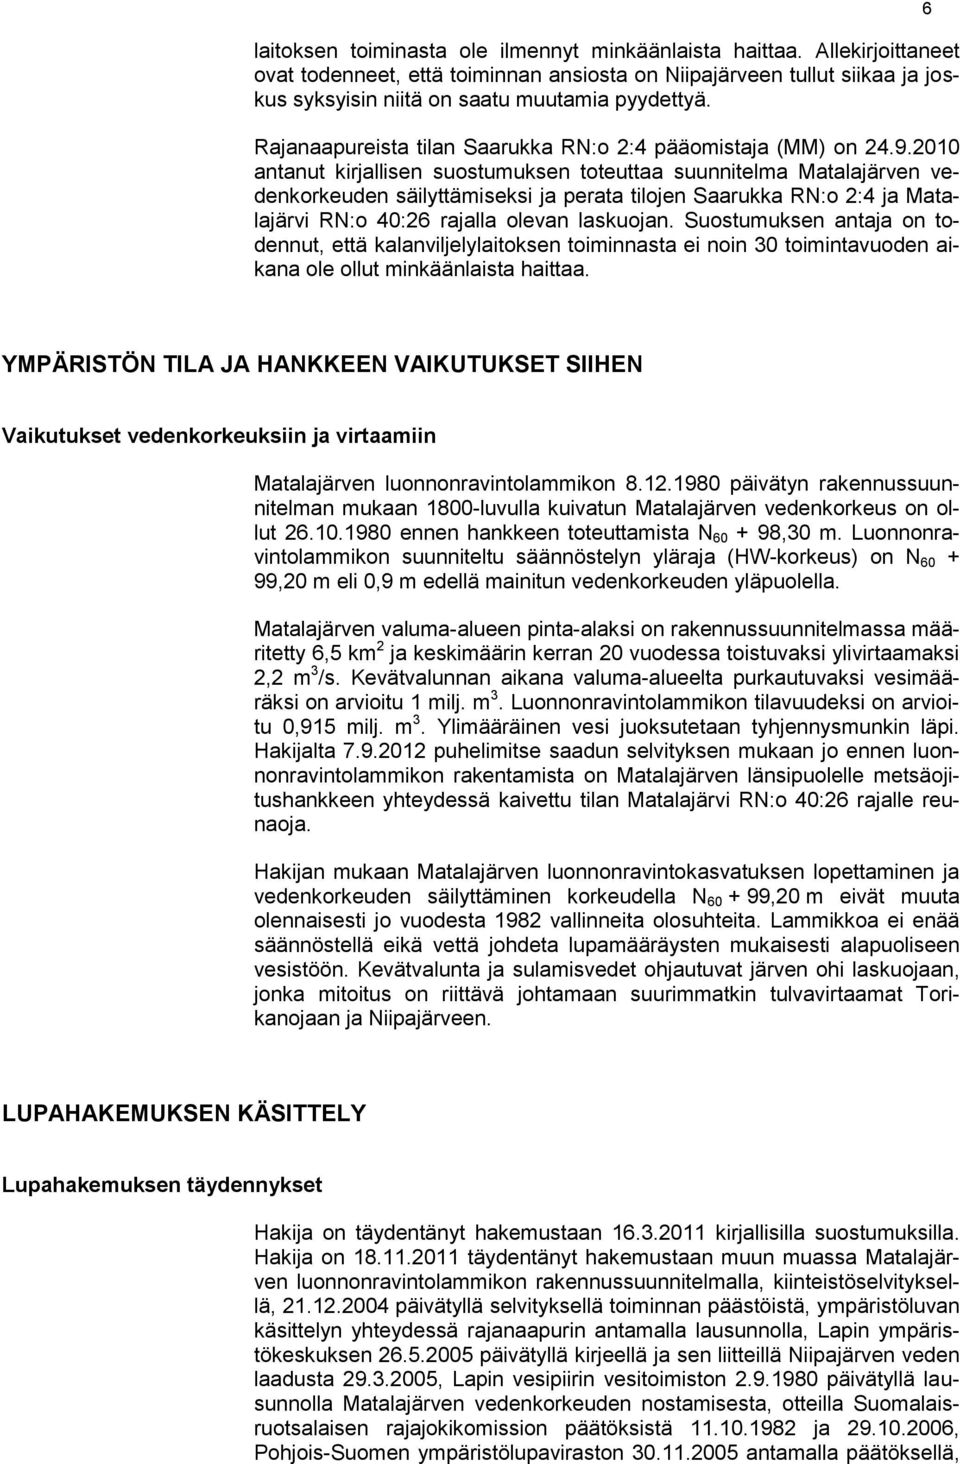 2010 antanut kirjallisen suostumuksen toteuttaa suunnitelma Matalajärven vedenkorkeuden säilyttämiseksi ja perata tilojen Saarukka RN:o 2:4 ja Matalajärvi RN:o 40:26 rajalla olevan laskuojan.